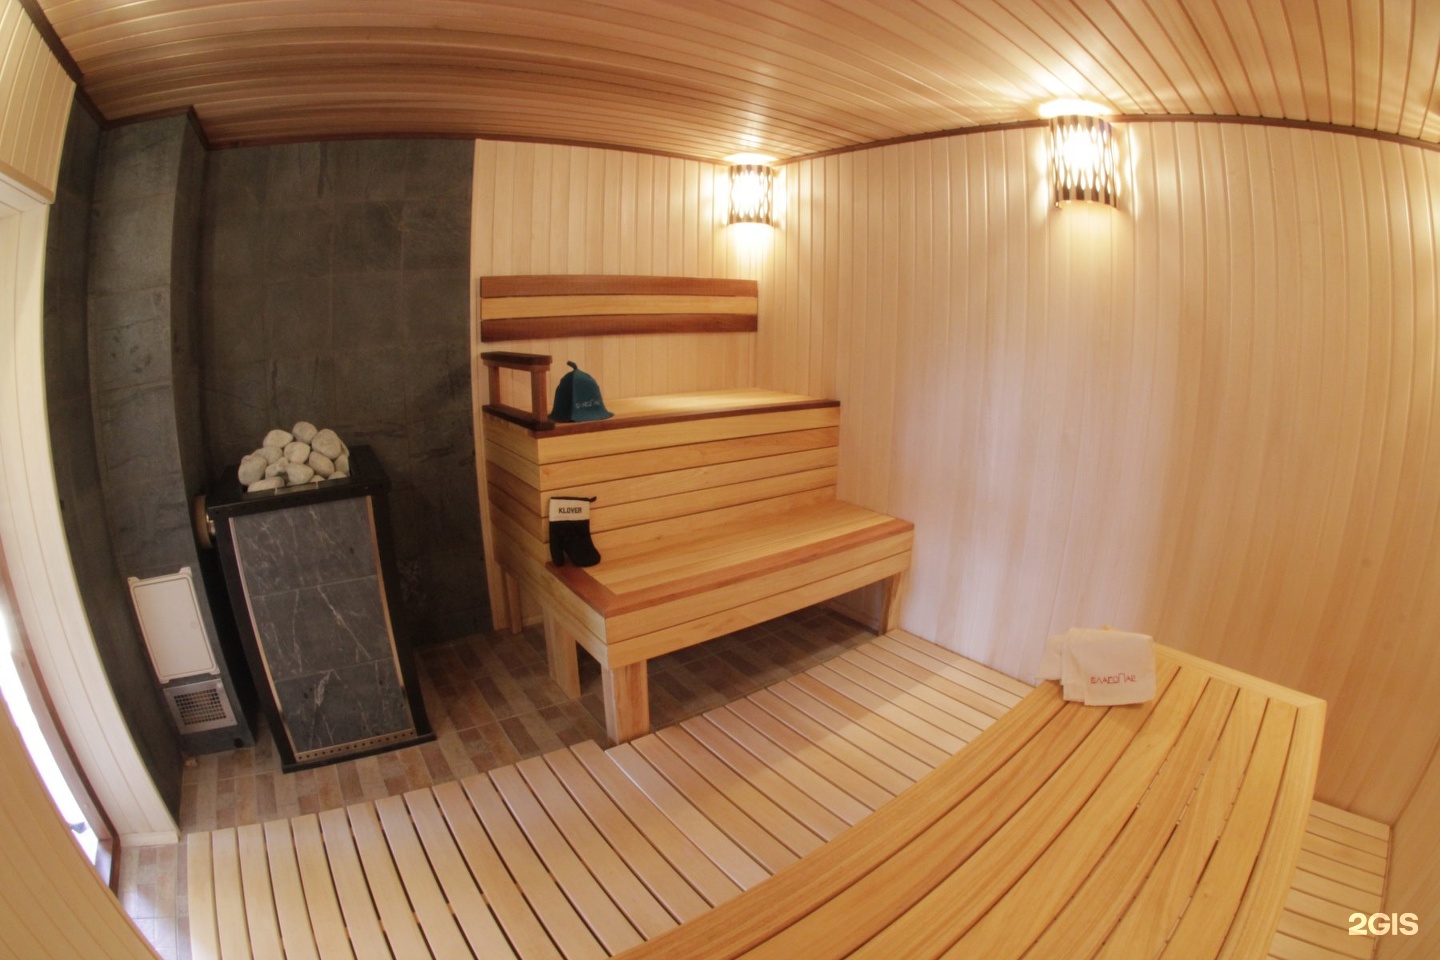 Steam baths saunas фото 117